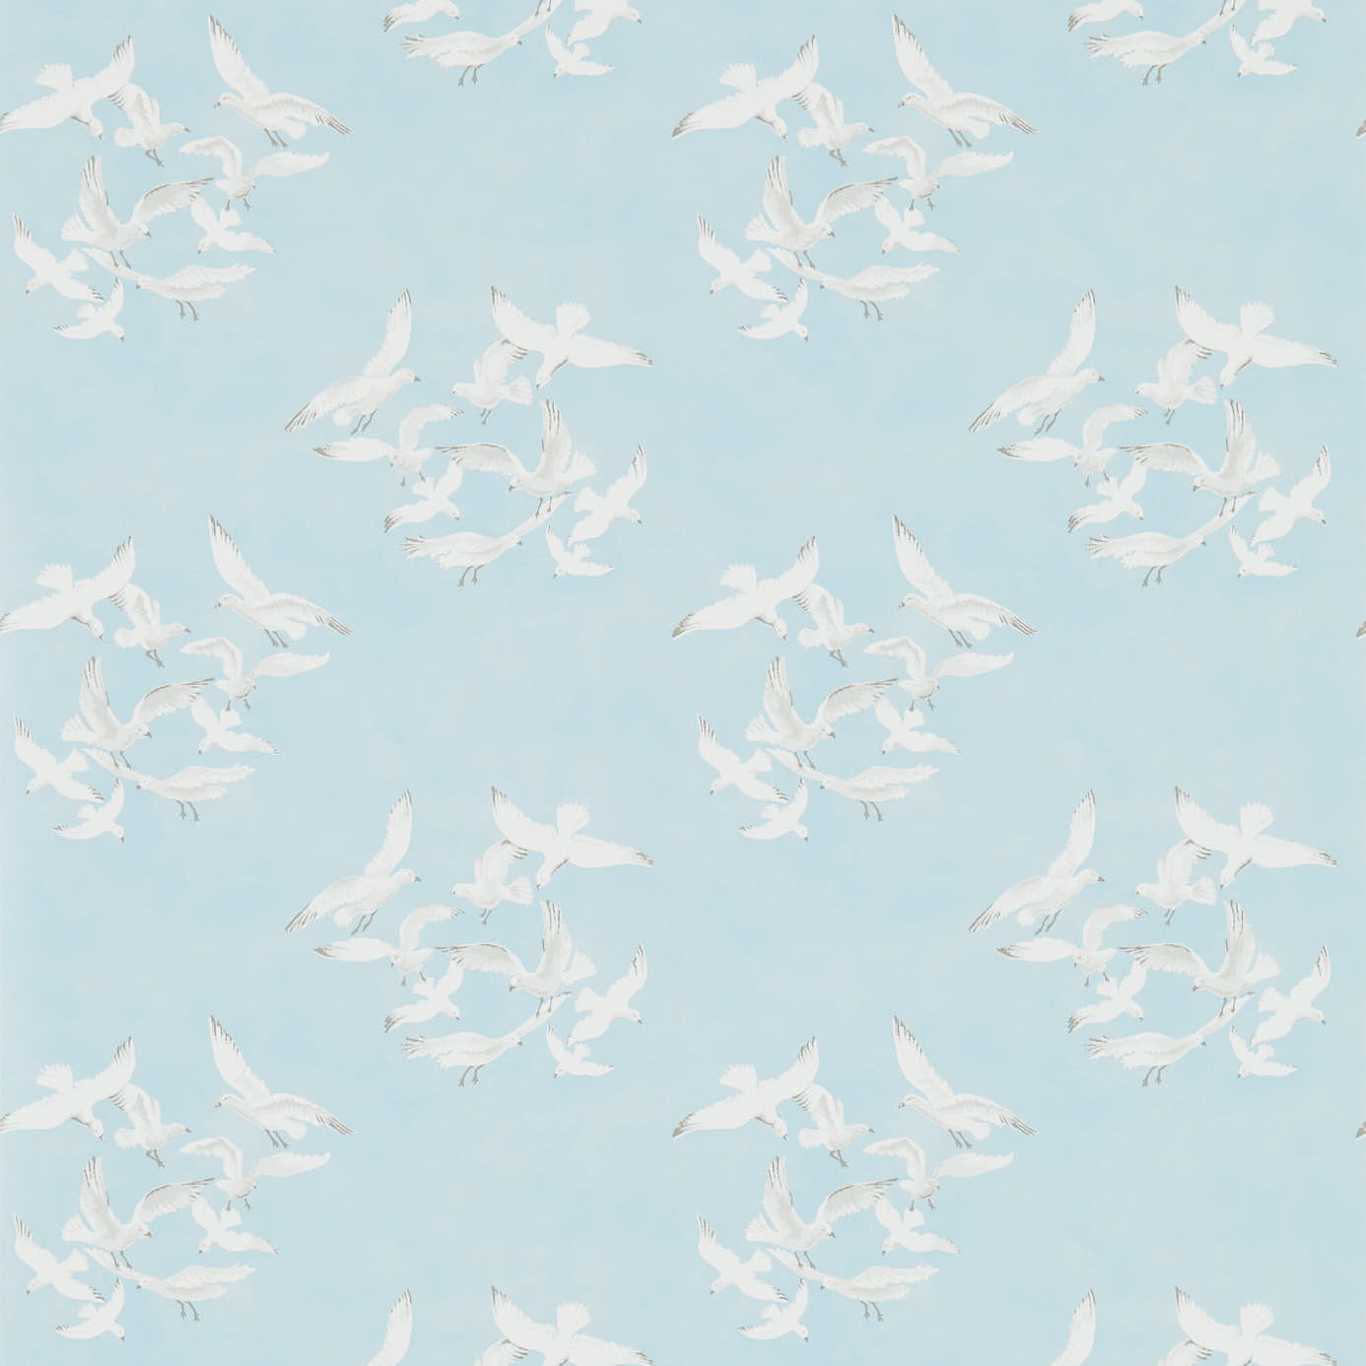 Seagulls Wallpaper - Blue